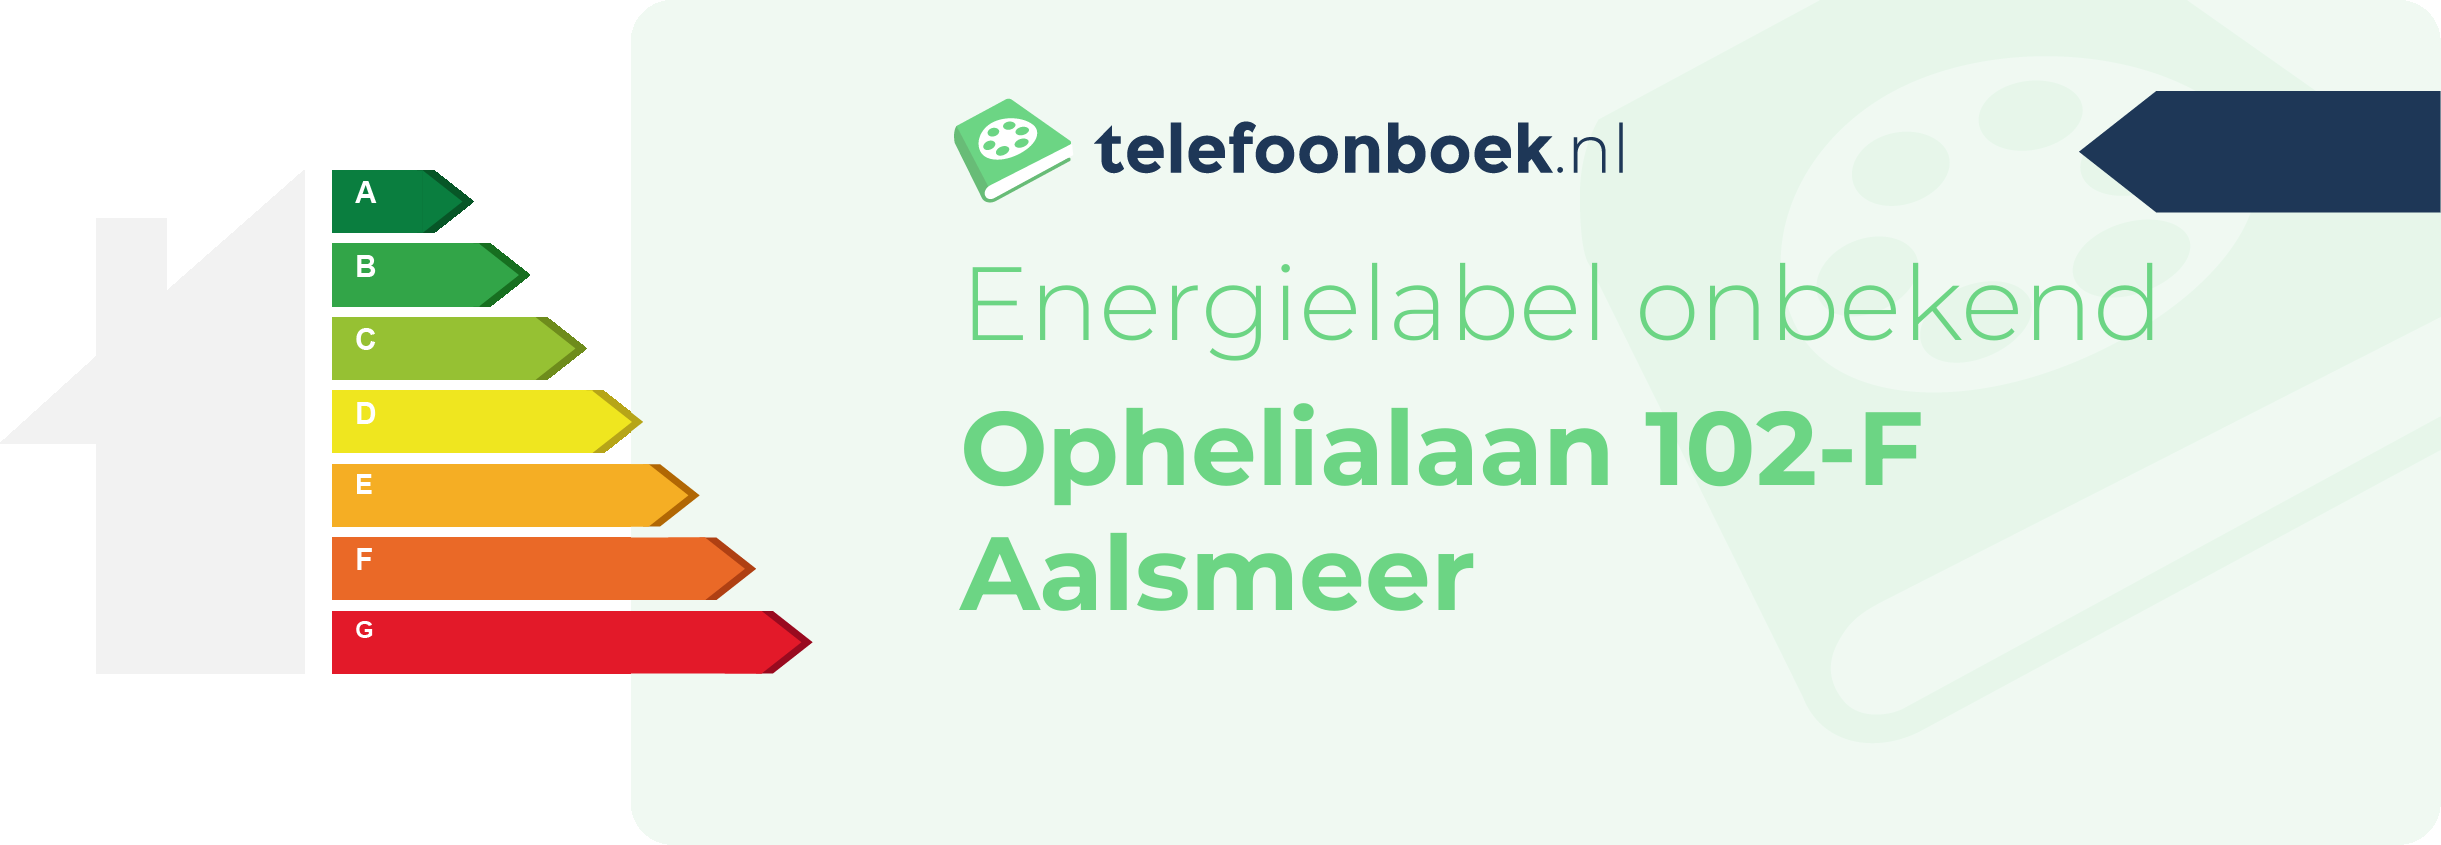 Energielabel Ophelialaan 102-F Aalsmeer